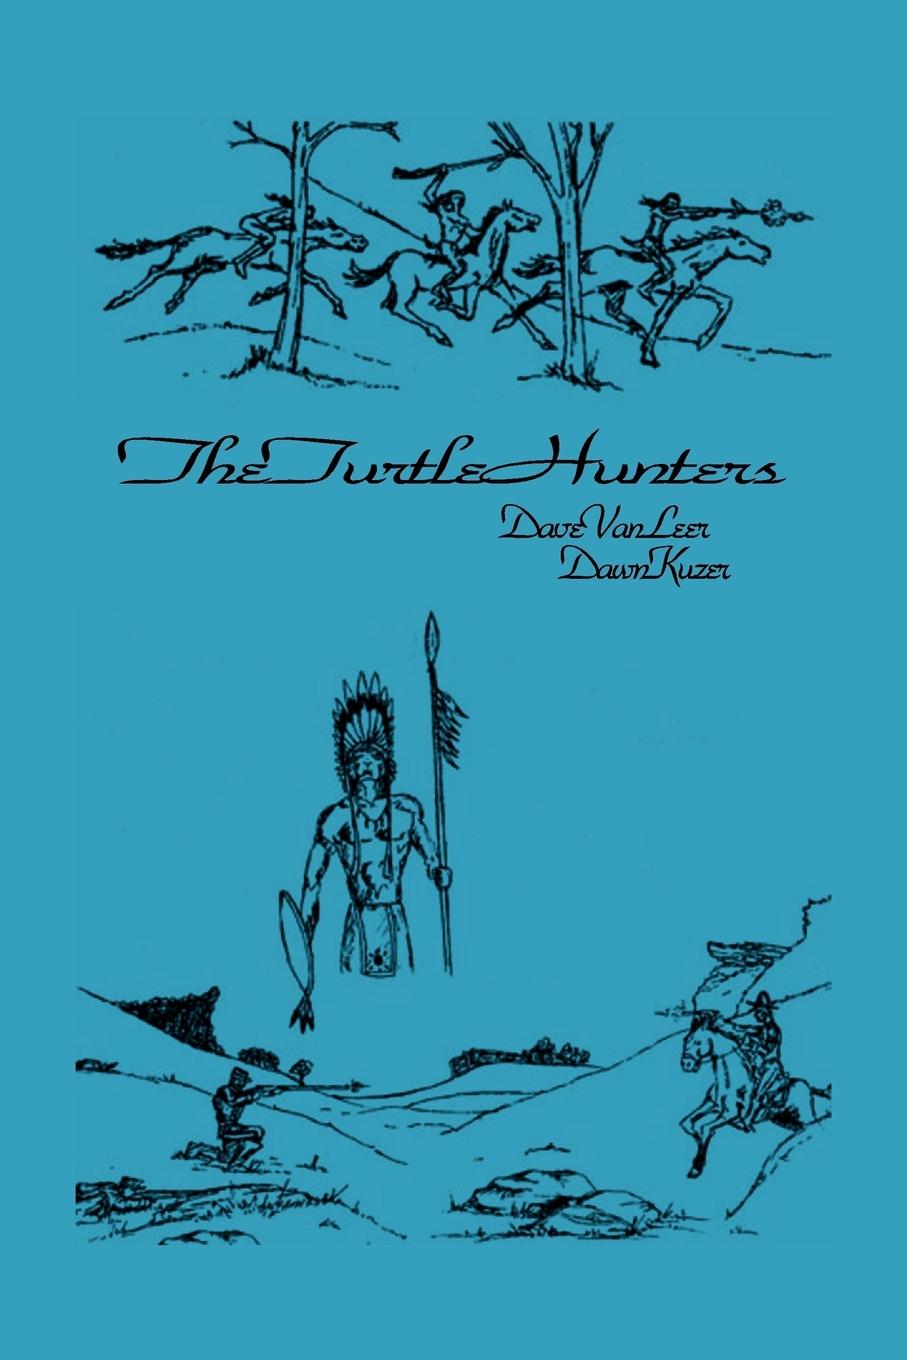 The Turtle Hunters - Dave Van Leer &. Dawn Kuzer, Van Leer &. Dave Van Leer &. Dawn Kuzer